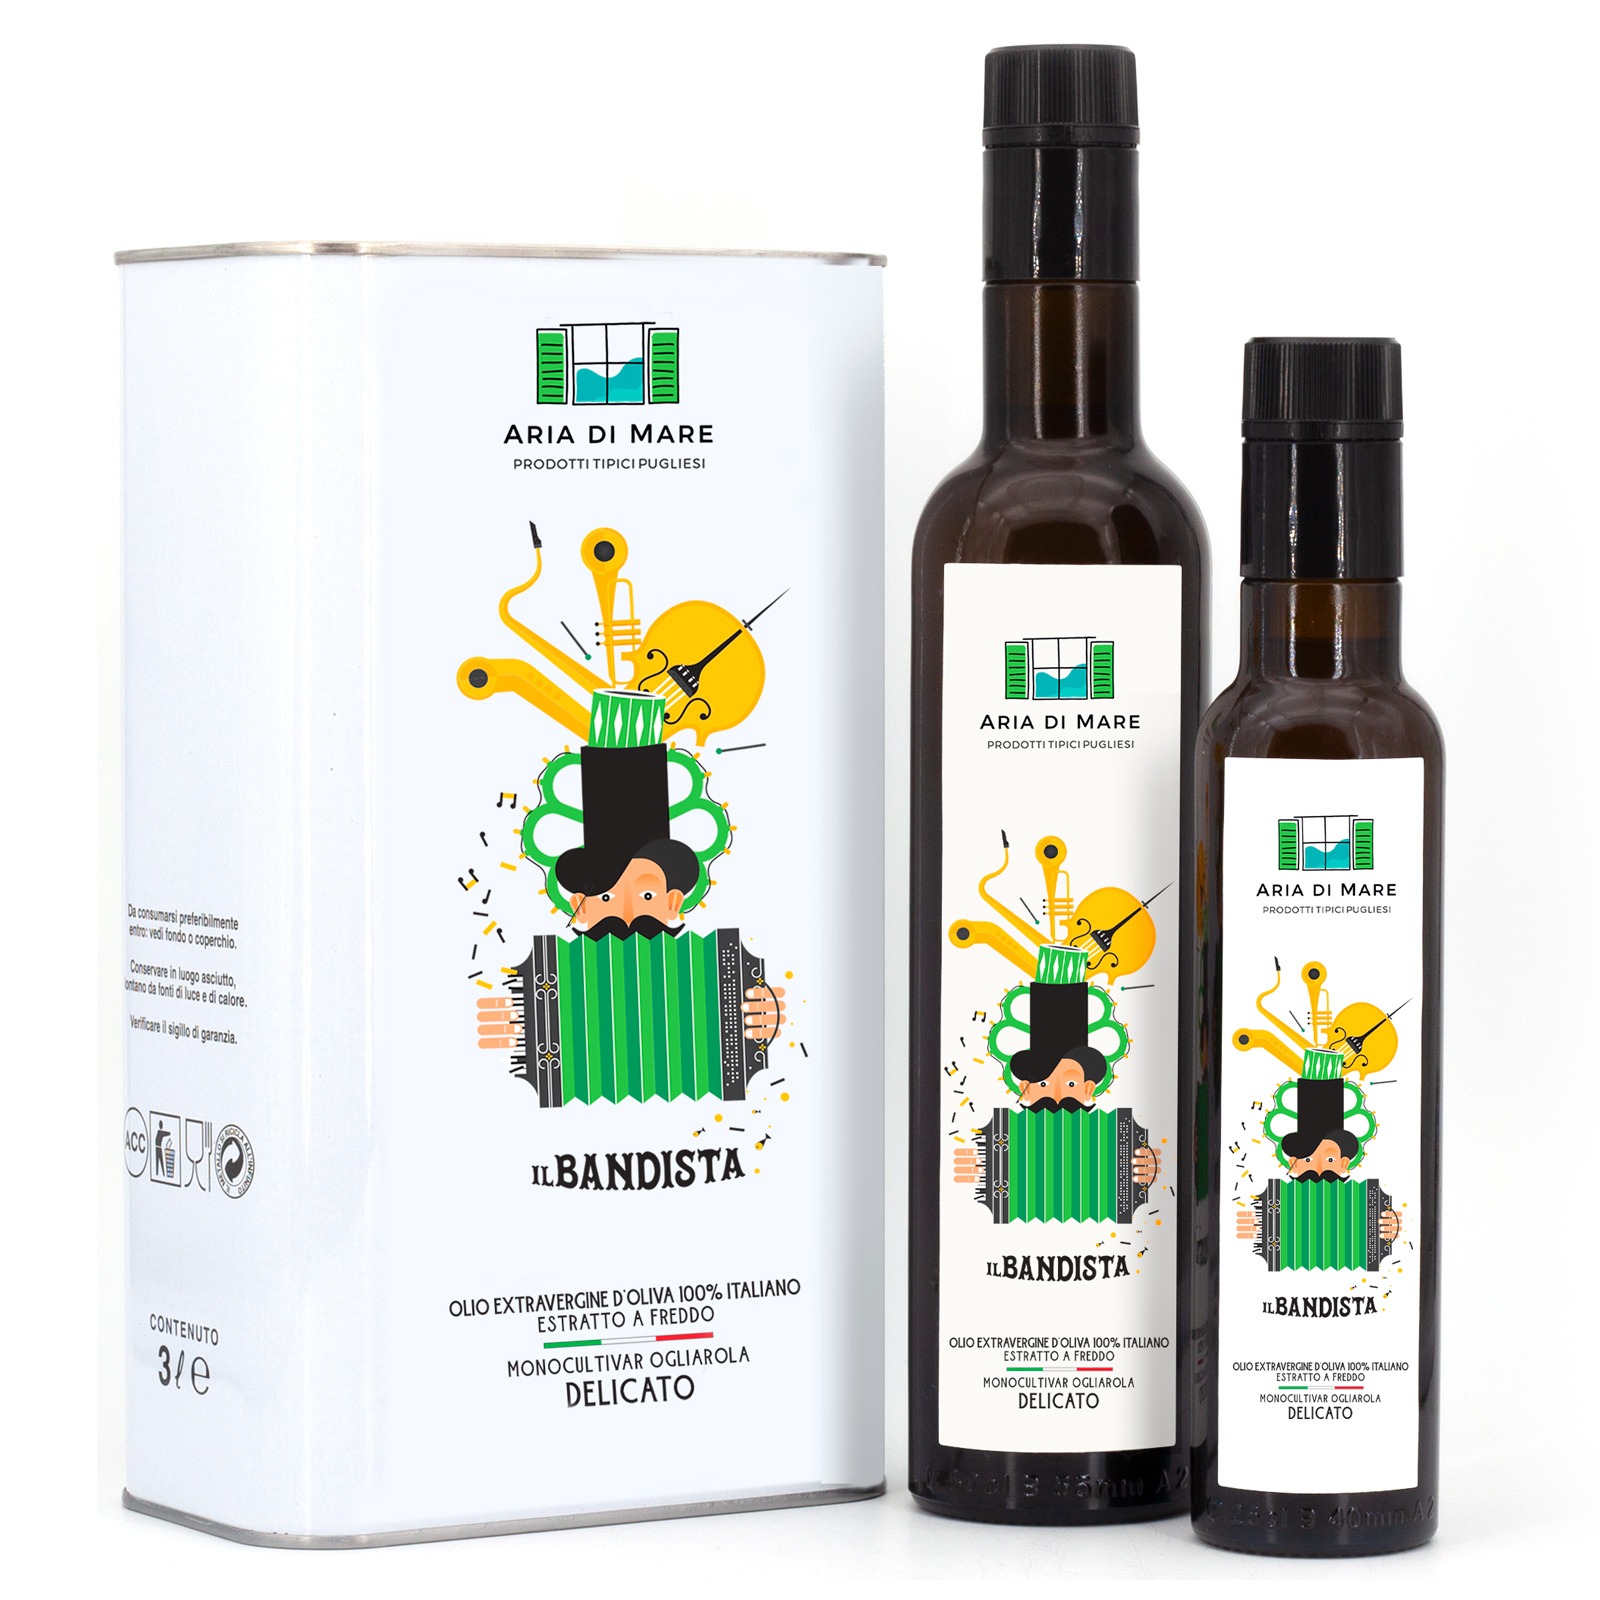 Monocultivar Ogliarola delicate extra virgin olive oil “Il Bandista”